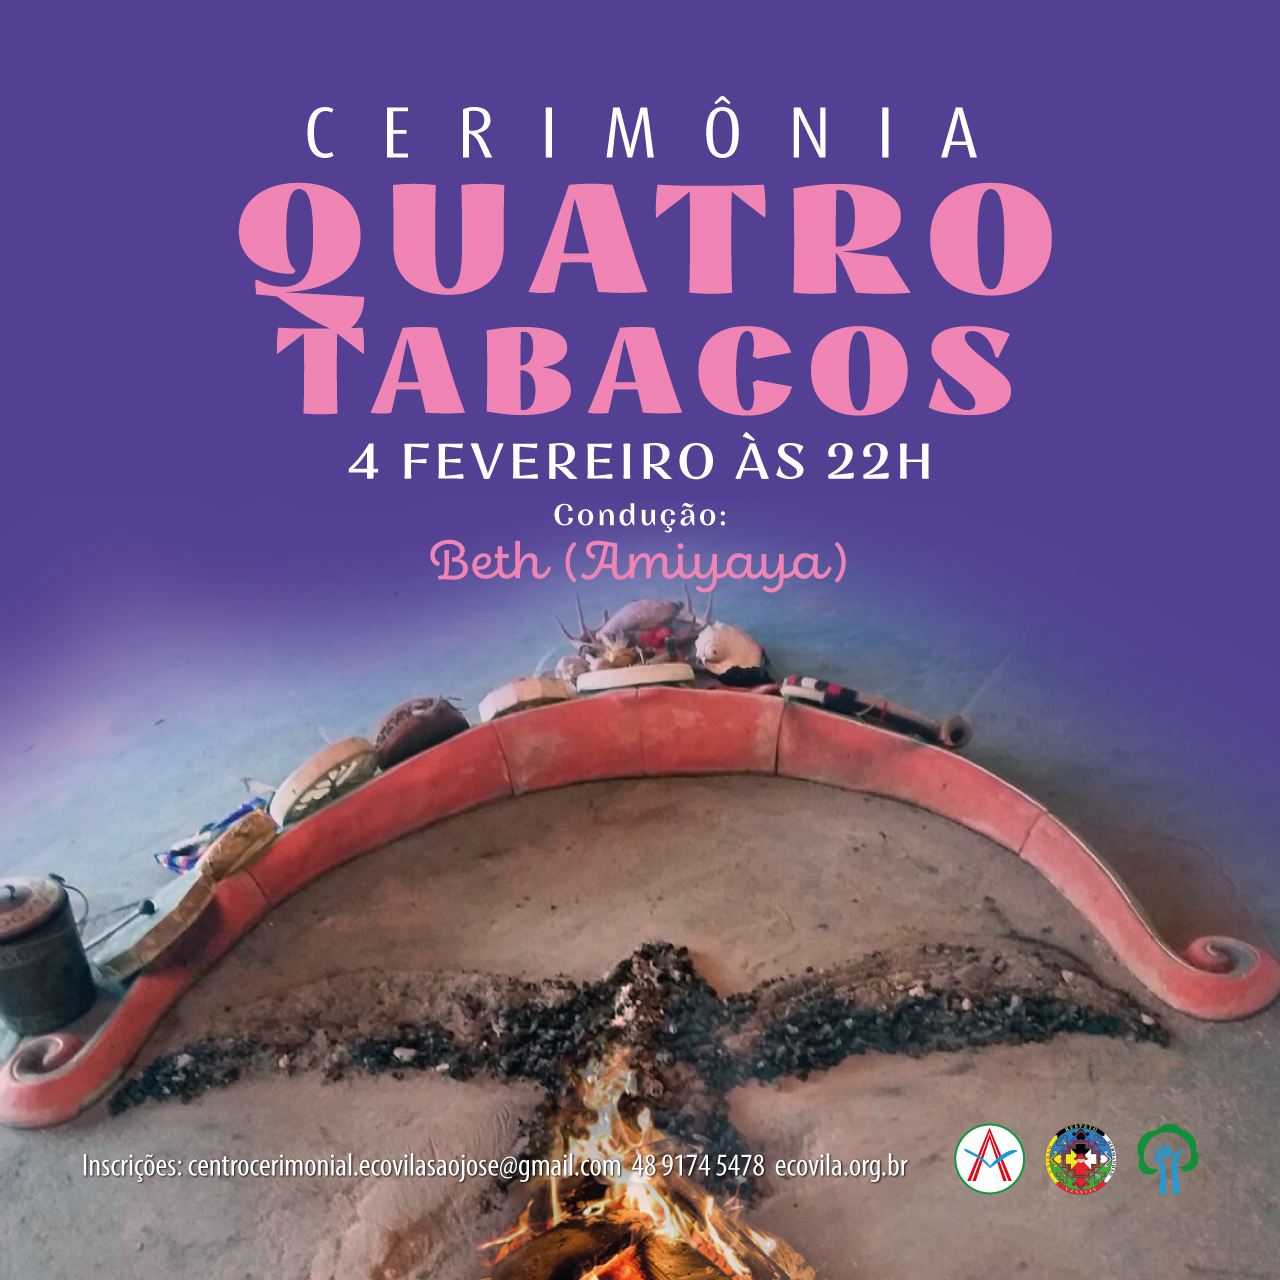 Cerimonia Quatro Tabacos